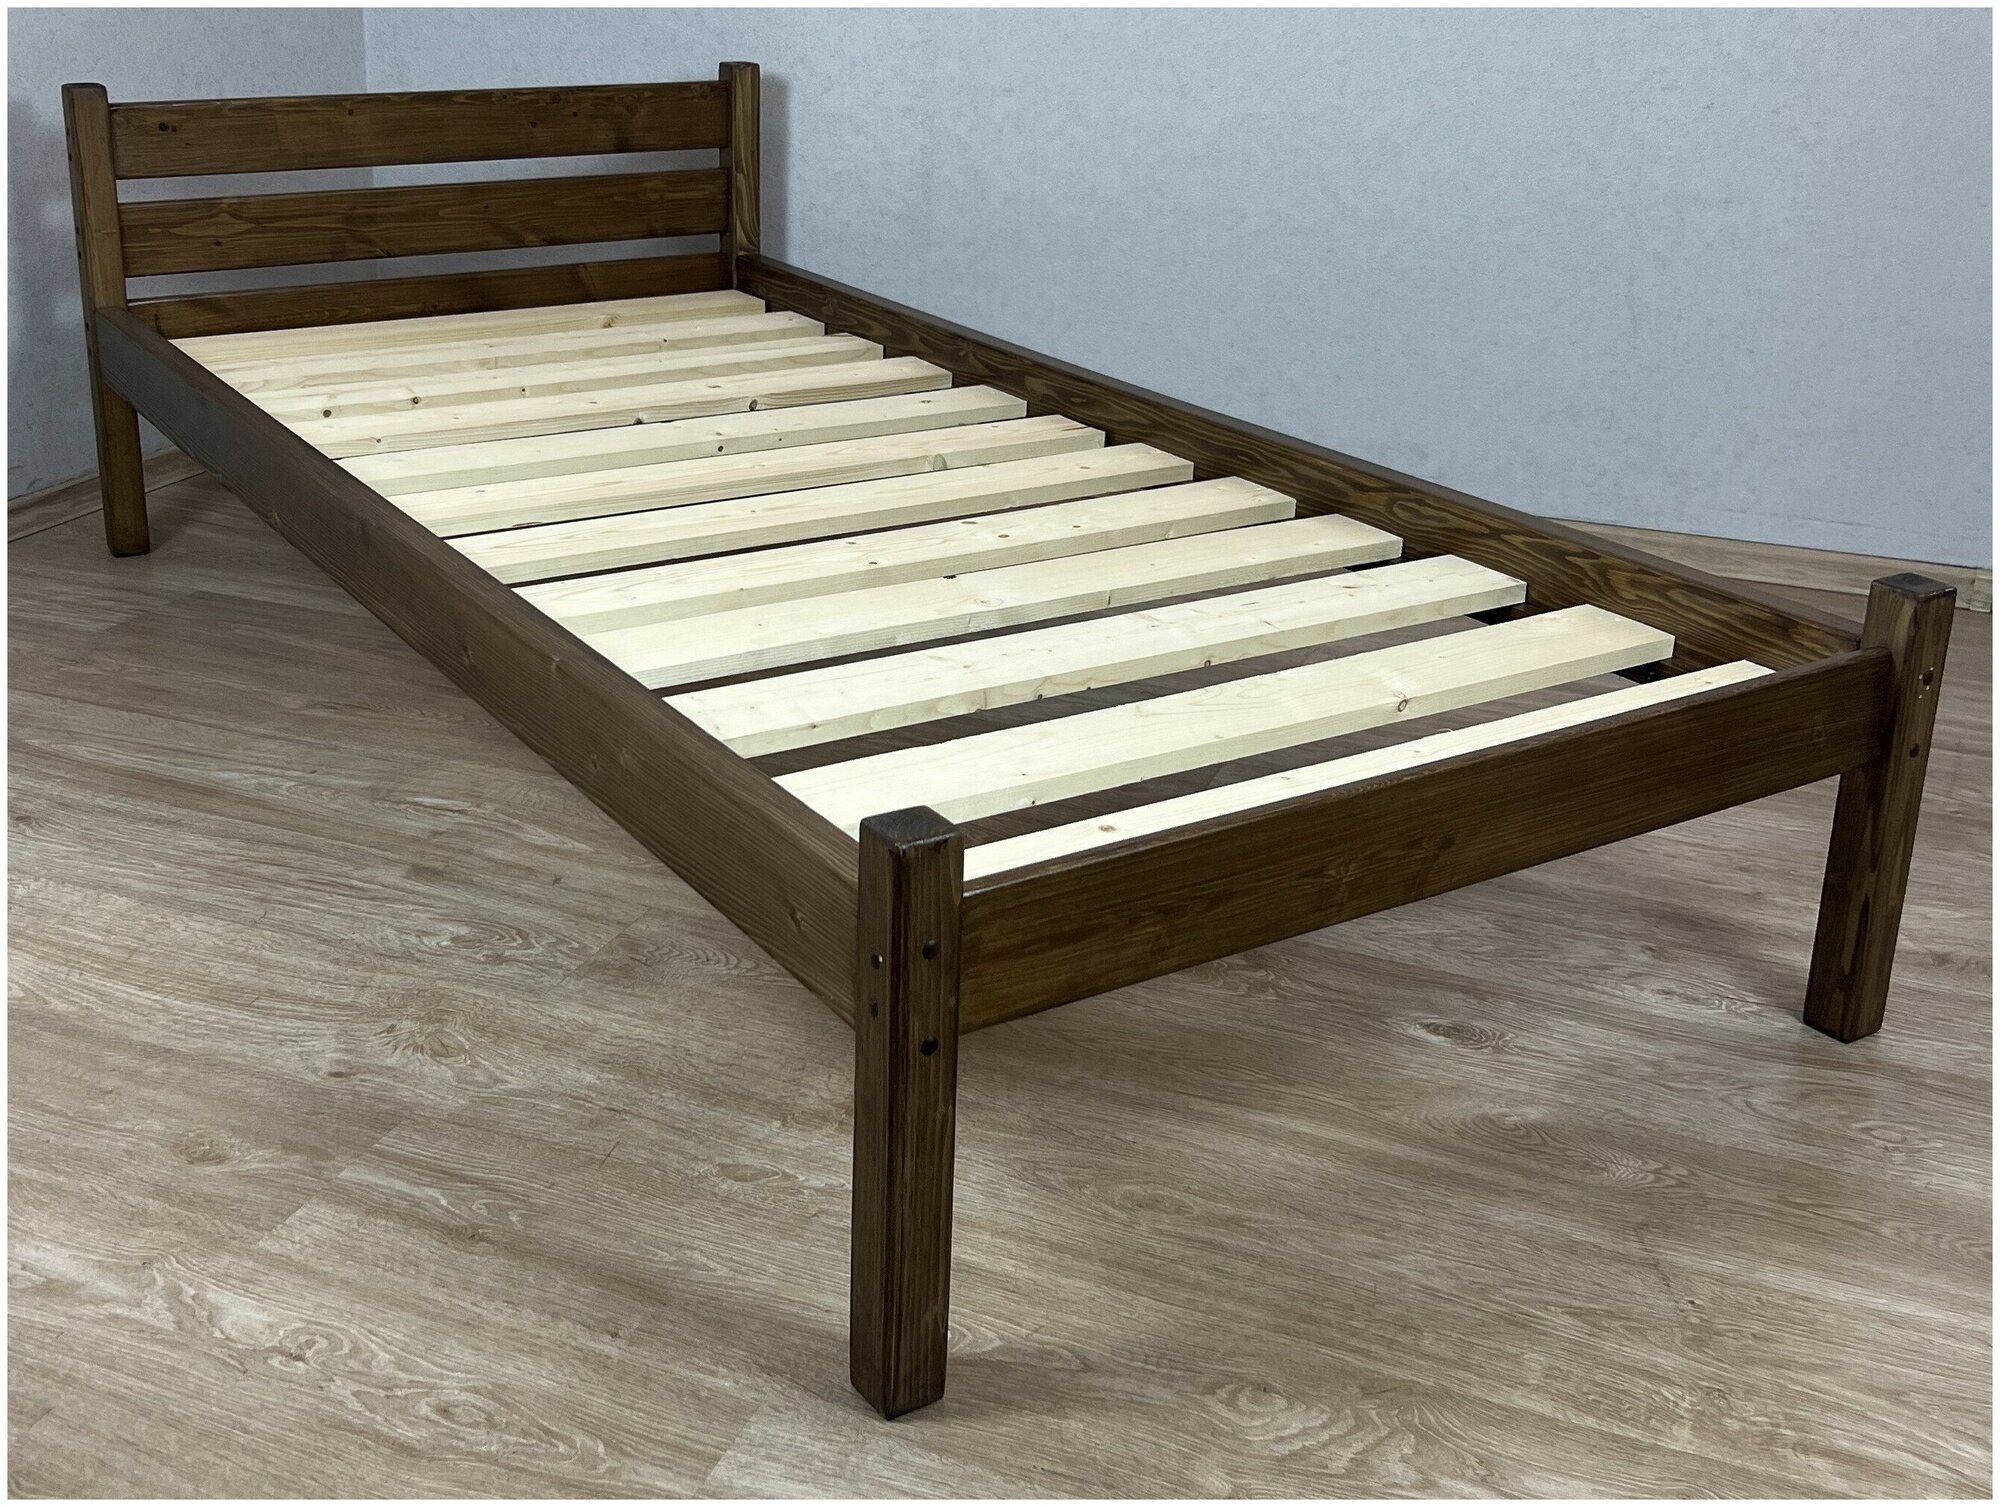 Кровать Классика лакированная из массива сосны с основанием односпальная 190х80 см, цвет темный дуб (габариты 200х90)